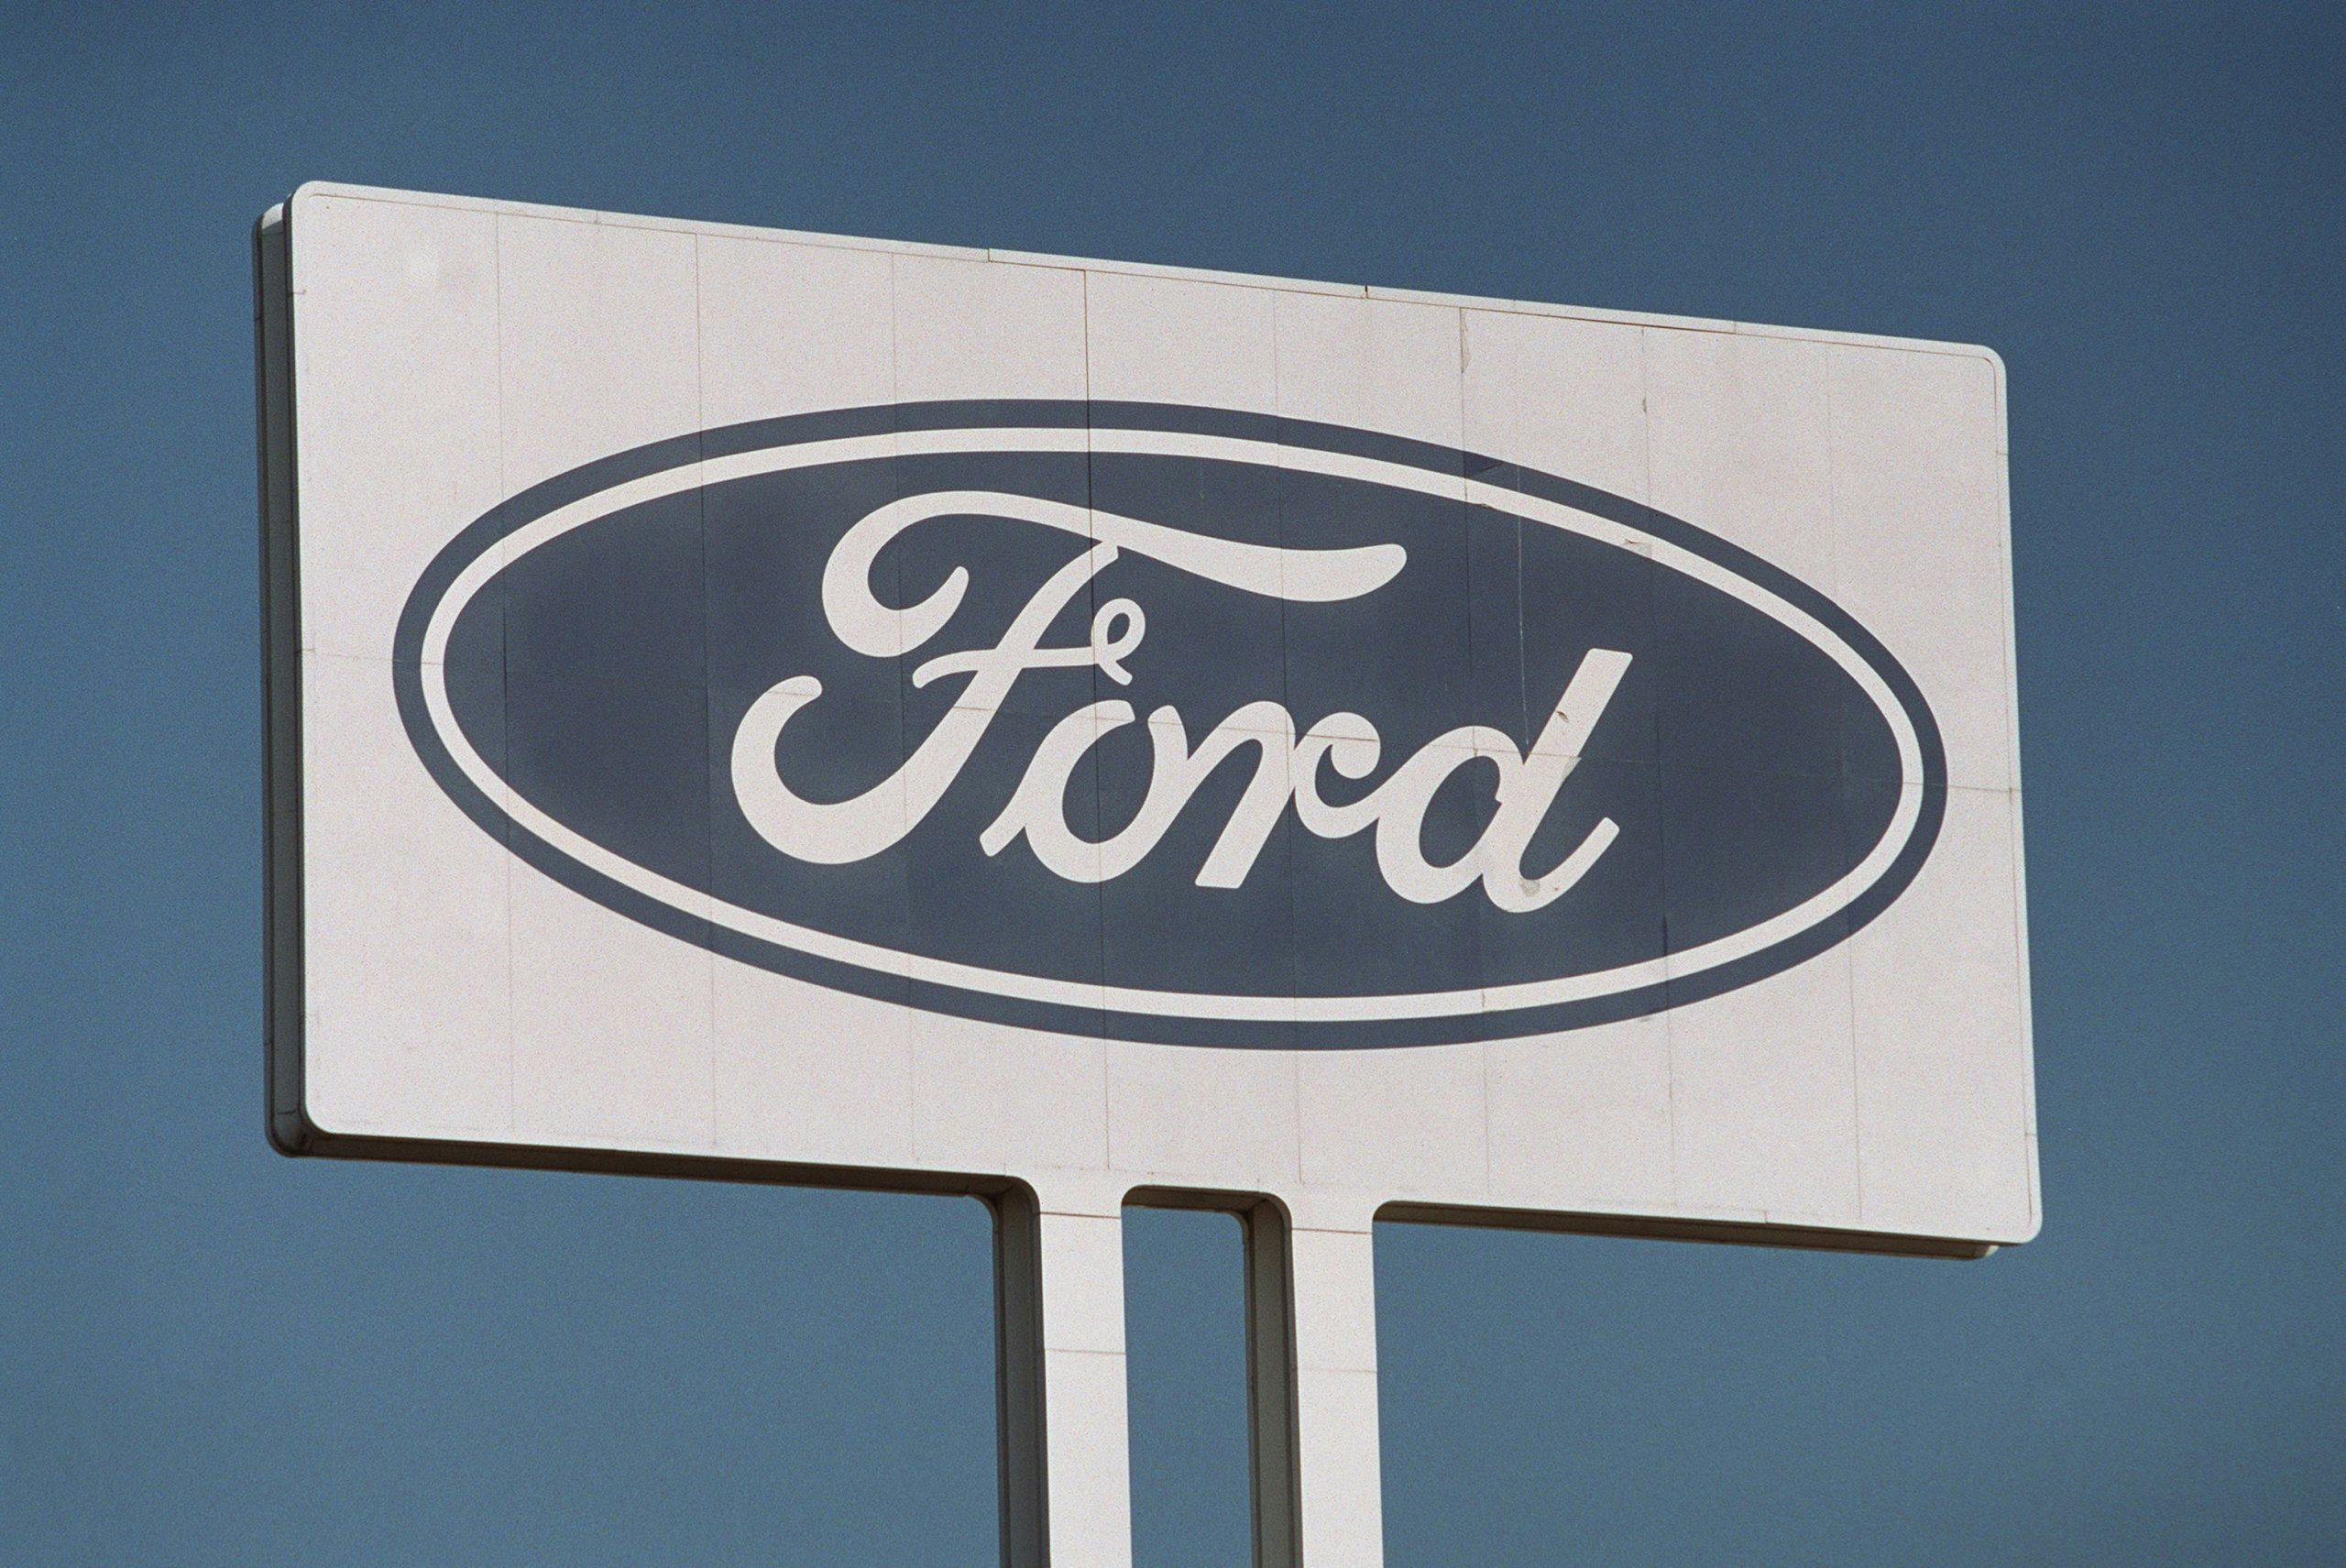 Ford plant sign Dagenham